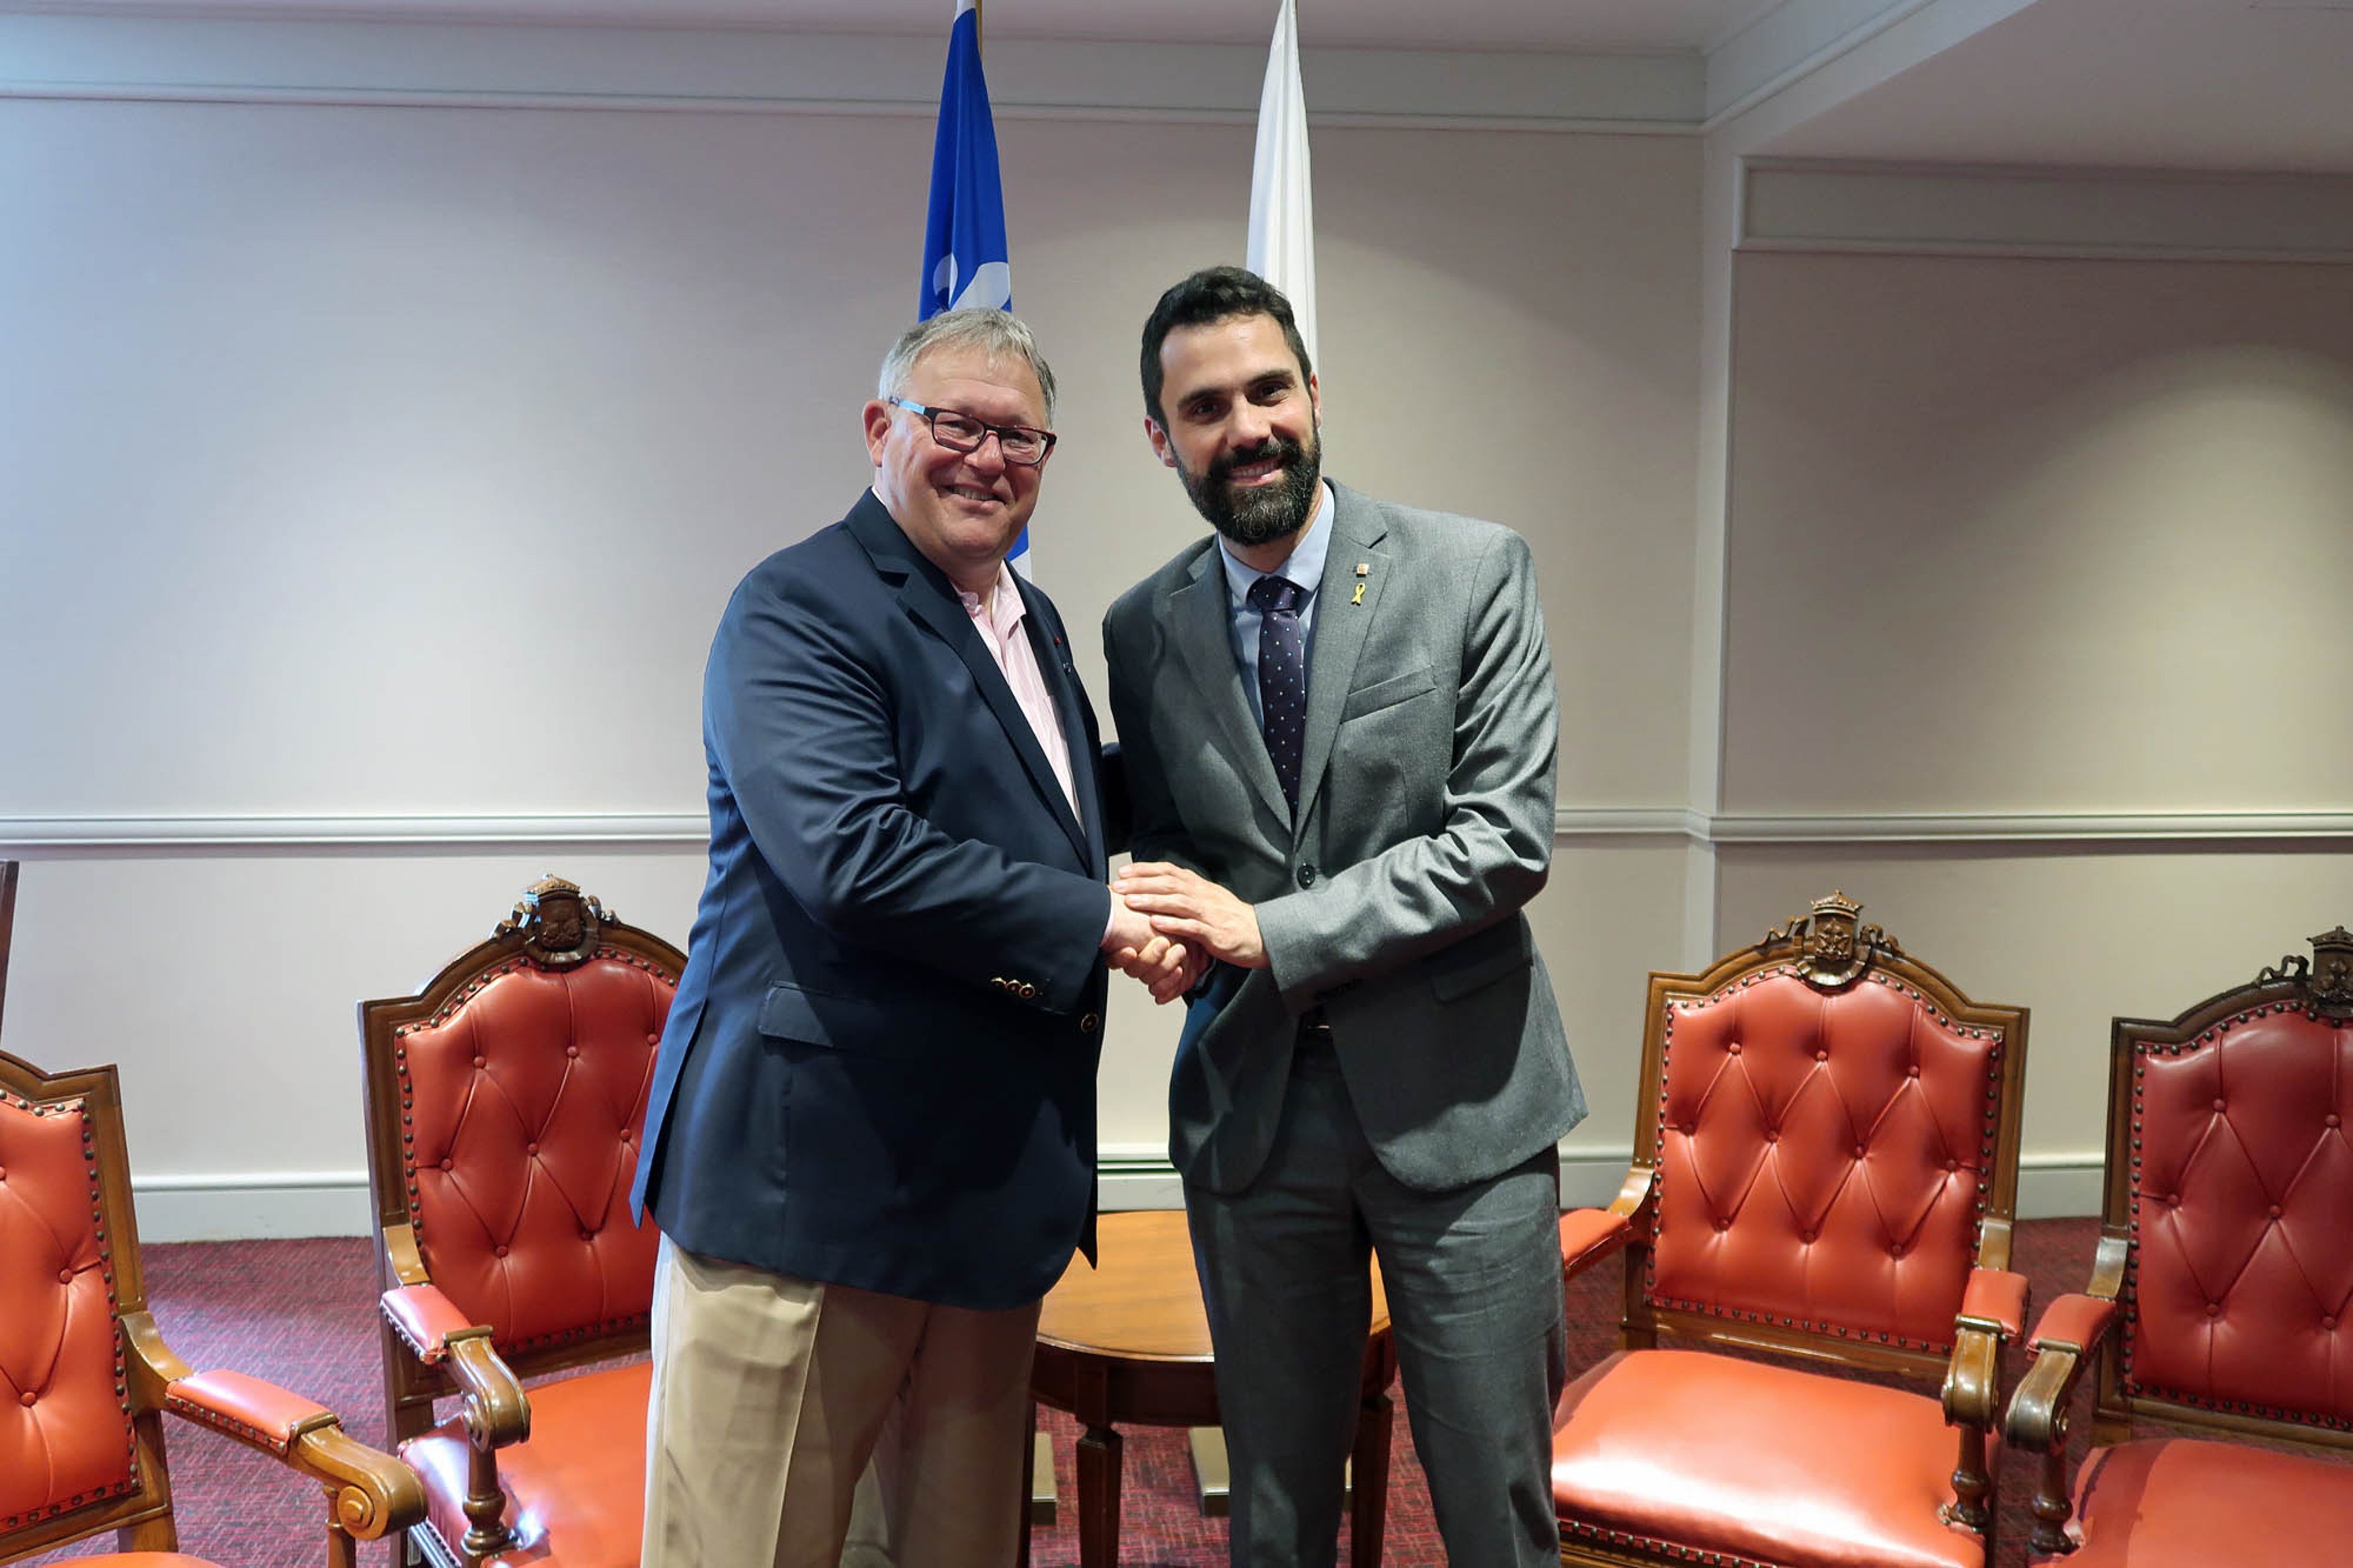 Torrent i el president de l'Assemblea Nacional del Quebec coincideixen amb demanar "diàleg"